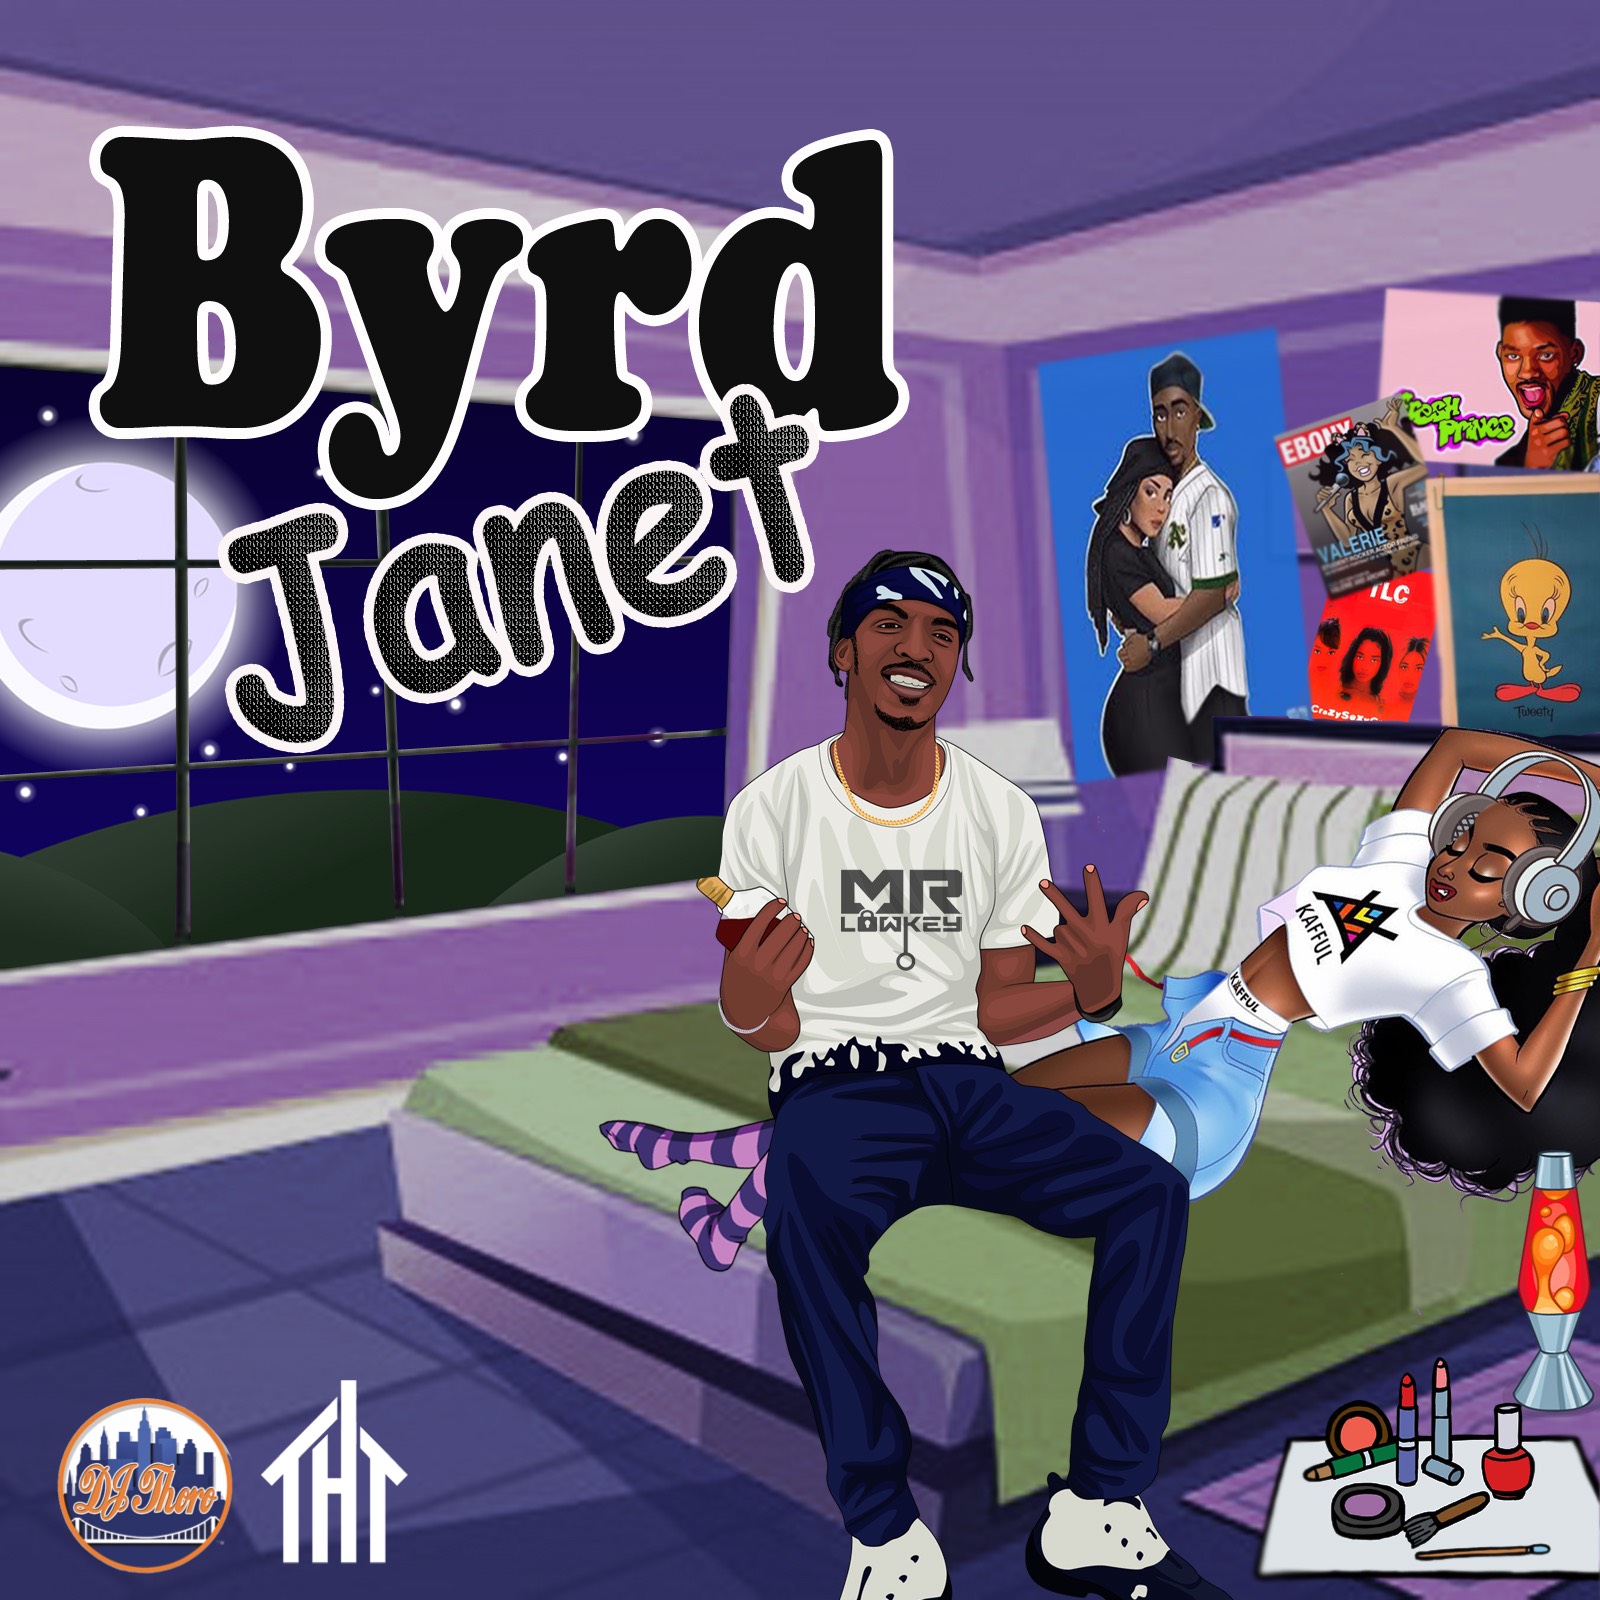 [Single] Byrd ‘Janet’ | @byrdstaylow